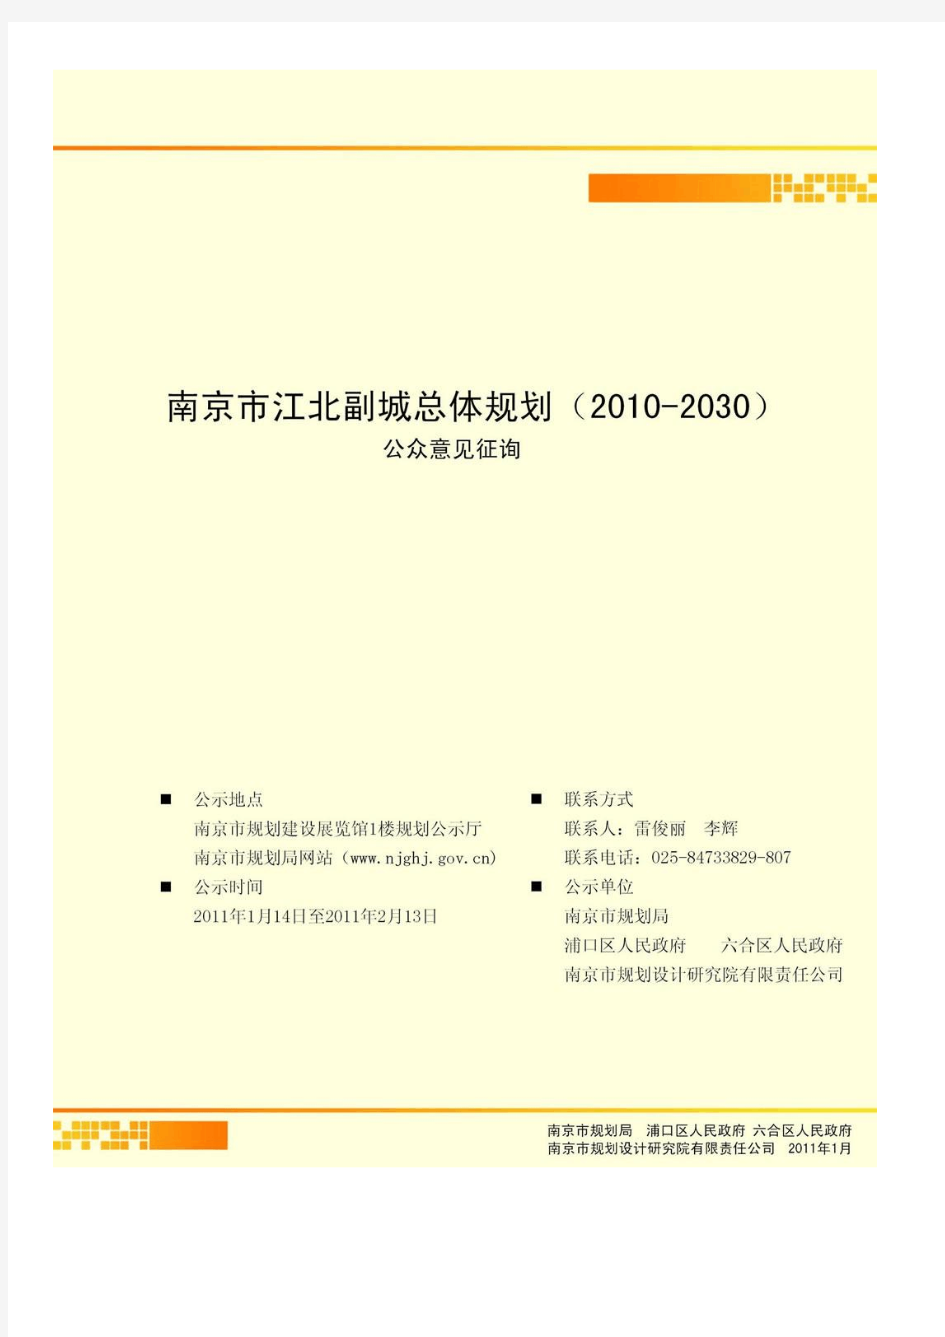 南京市江北副城总体规划(2010-2030)征求意见稿